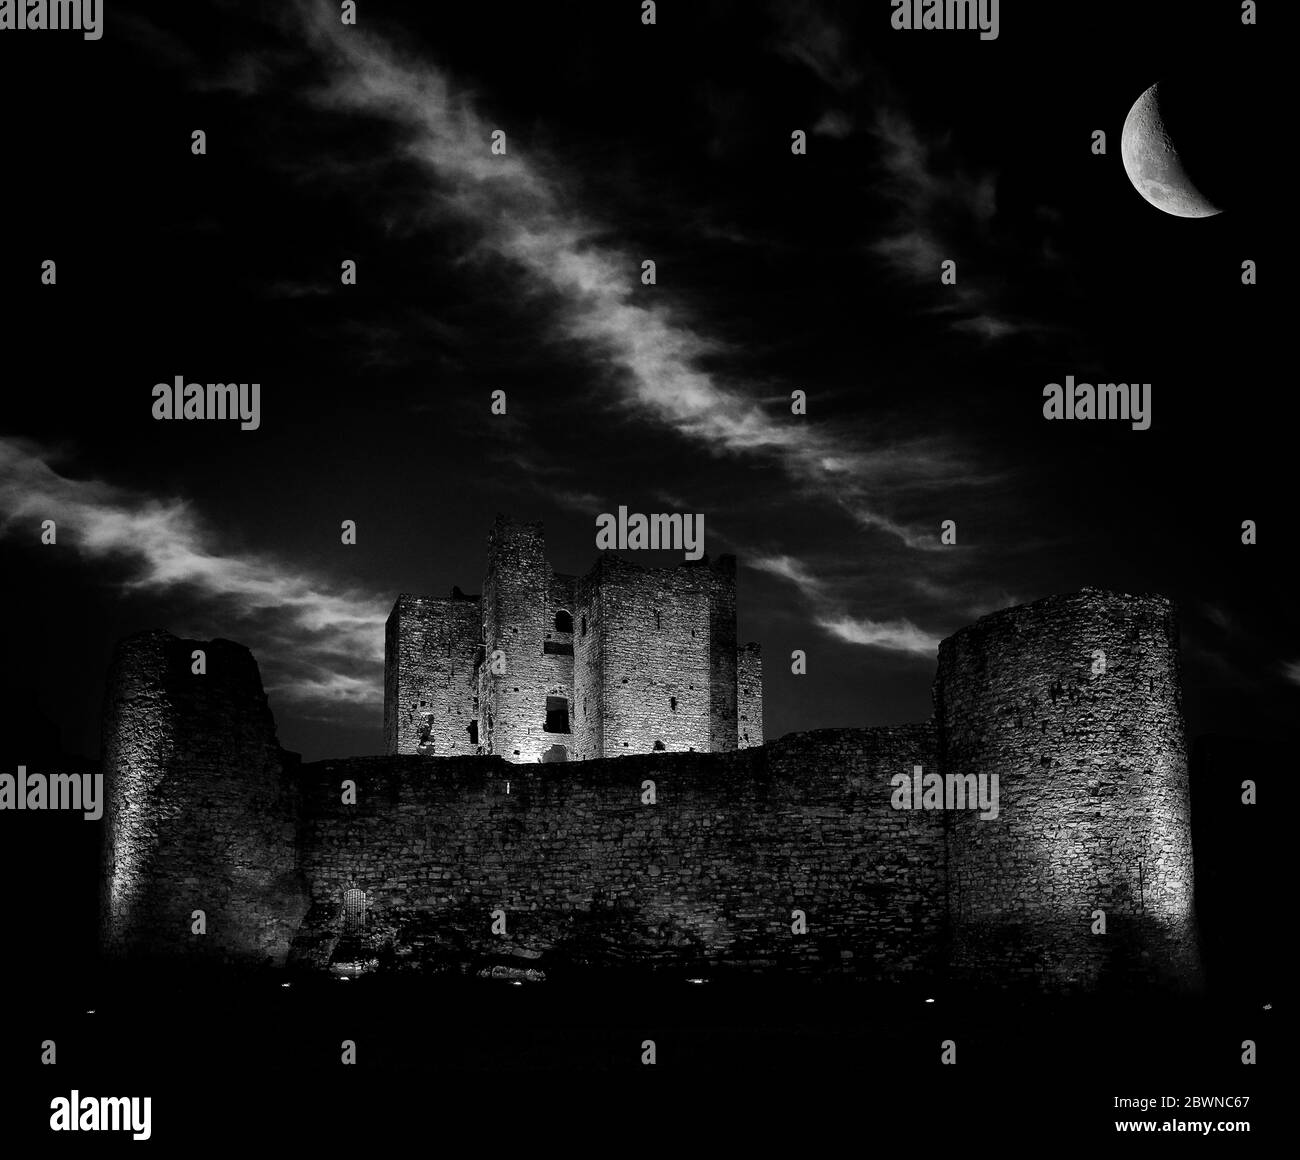 Les murs illuminés du château Trim, un château normand sur la rivière Boyne à Trim, comté de Meath, Irlande. Le plus grand château normand d'Irlande. Banque D'Images